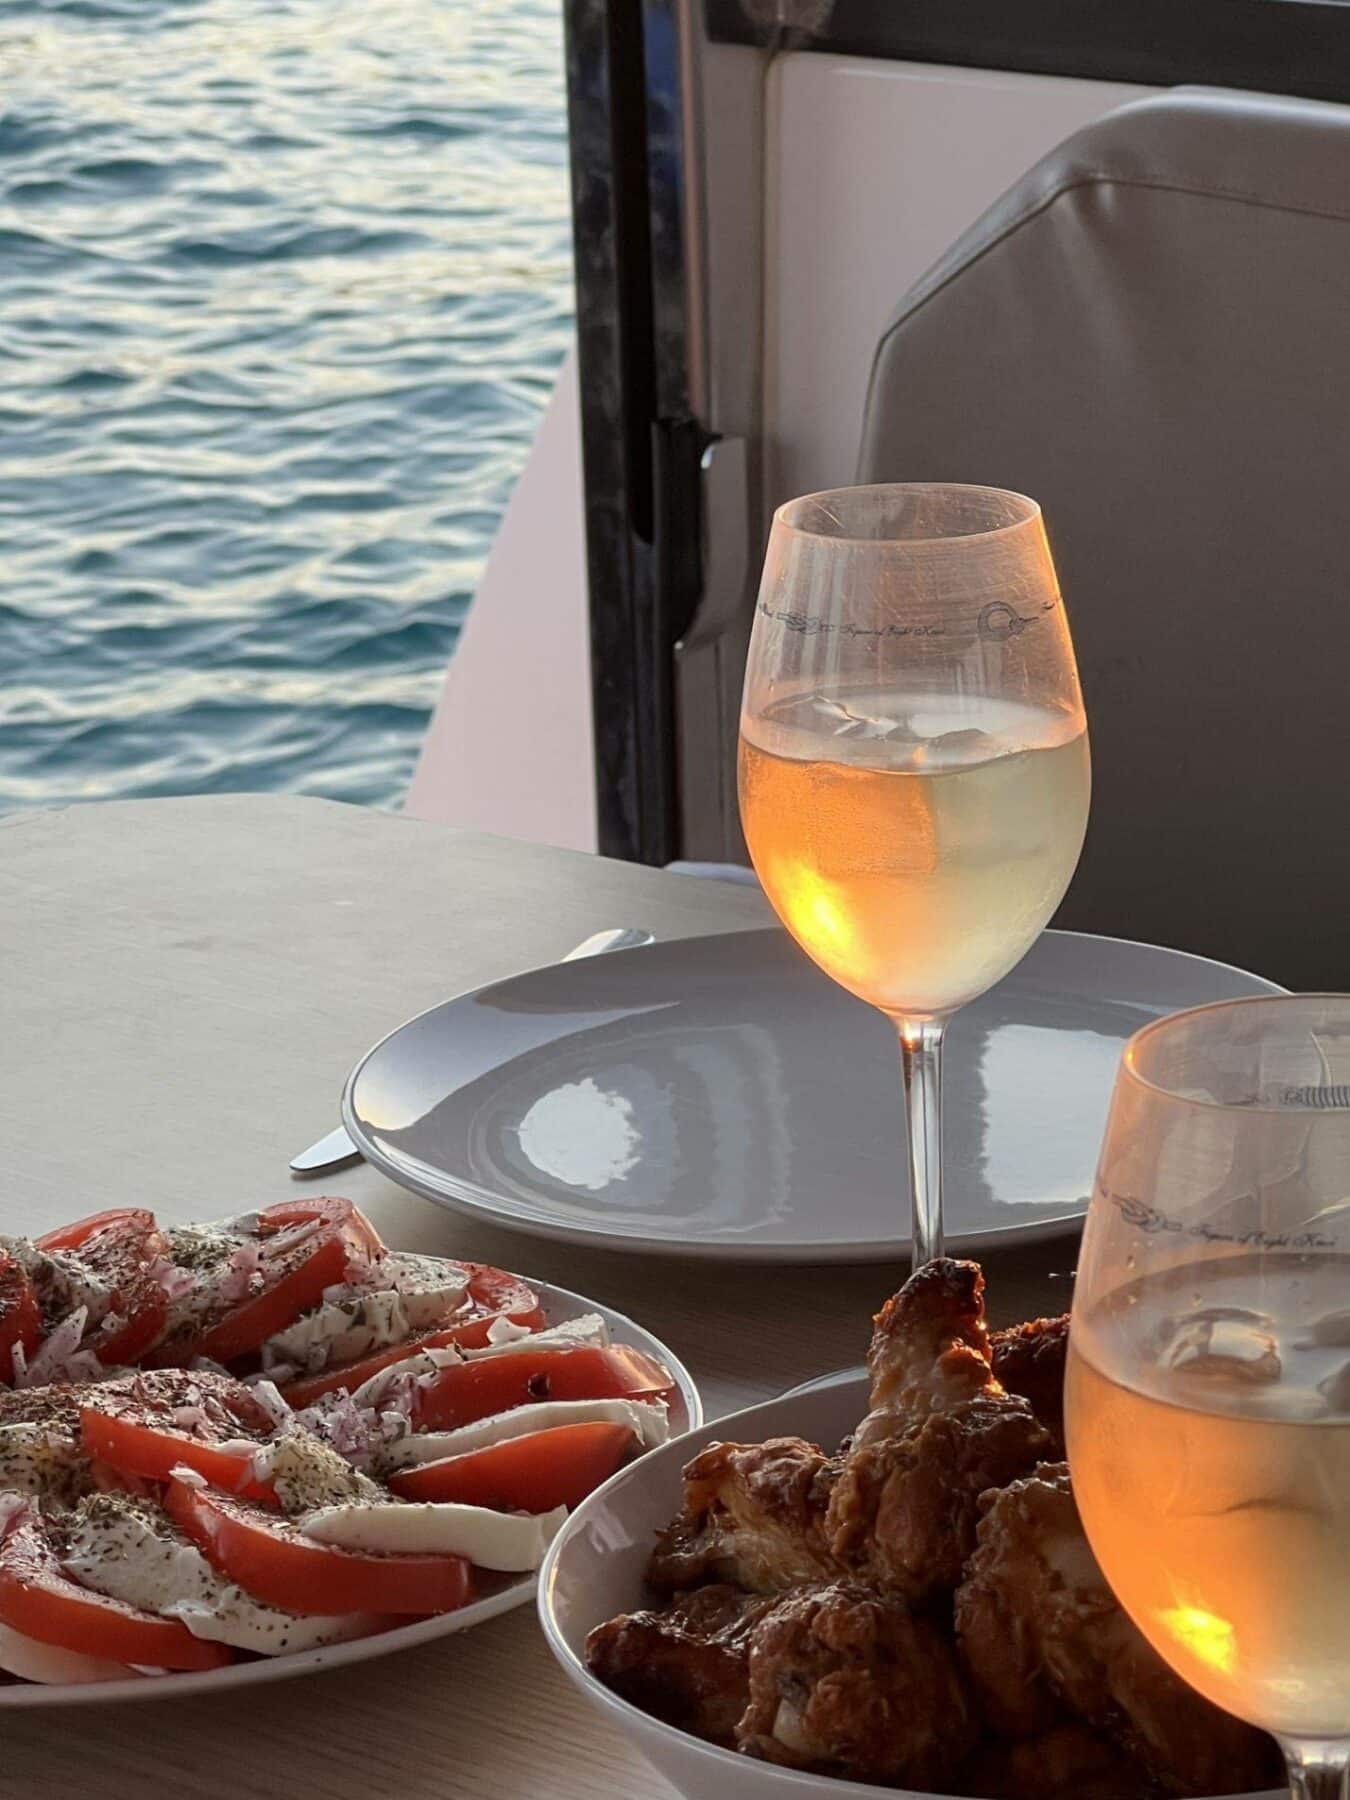 Eine entspannende Mahlzeit am Meer mit einem Glas Roséwein, Tellern mit Tomaten-Mozzarella-Salat und gebratenem Hähnchen vor der ruhigen Meereskulisse während eines Segeltörns bei Sonnenuntergang.